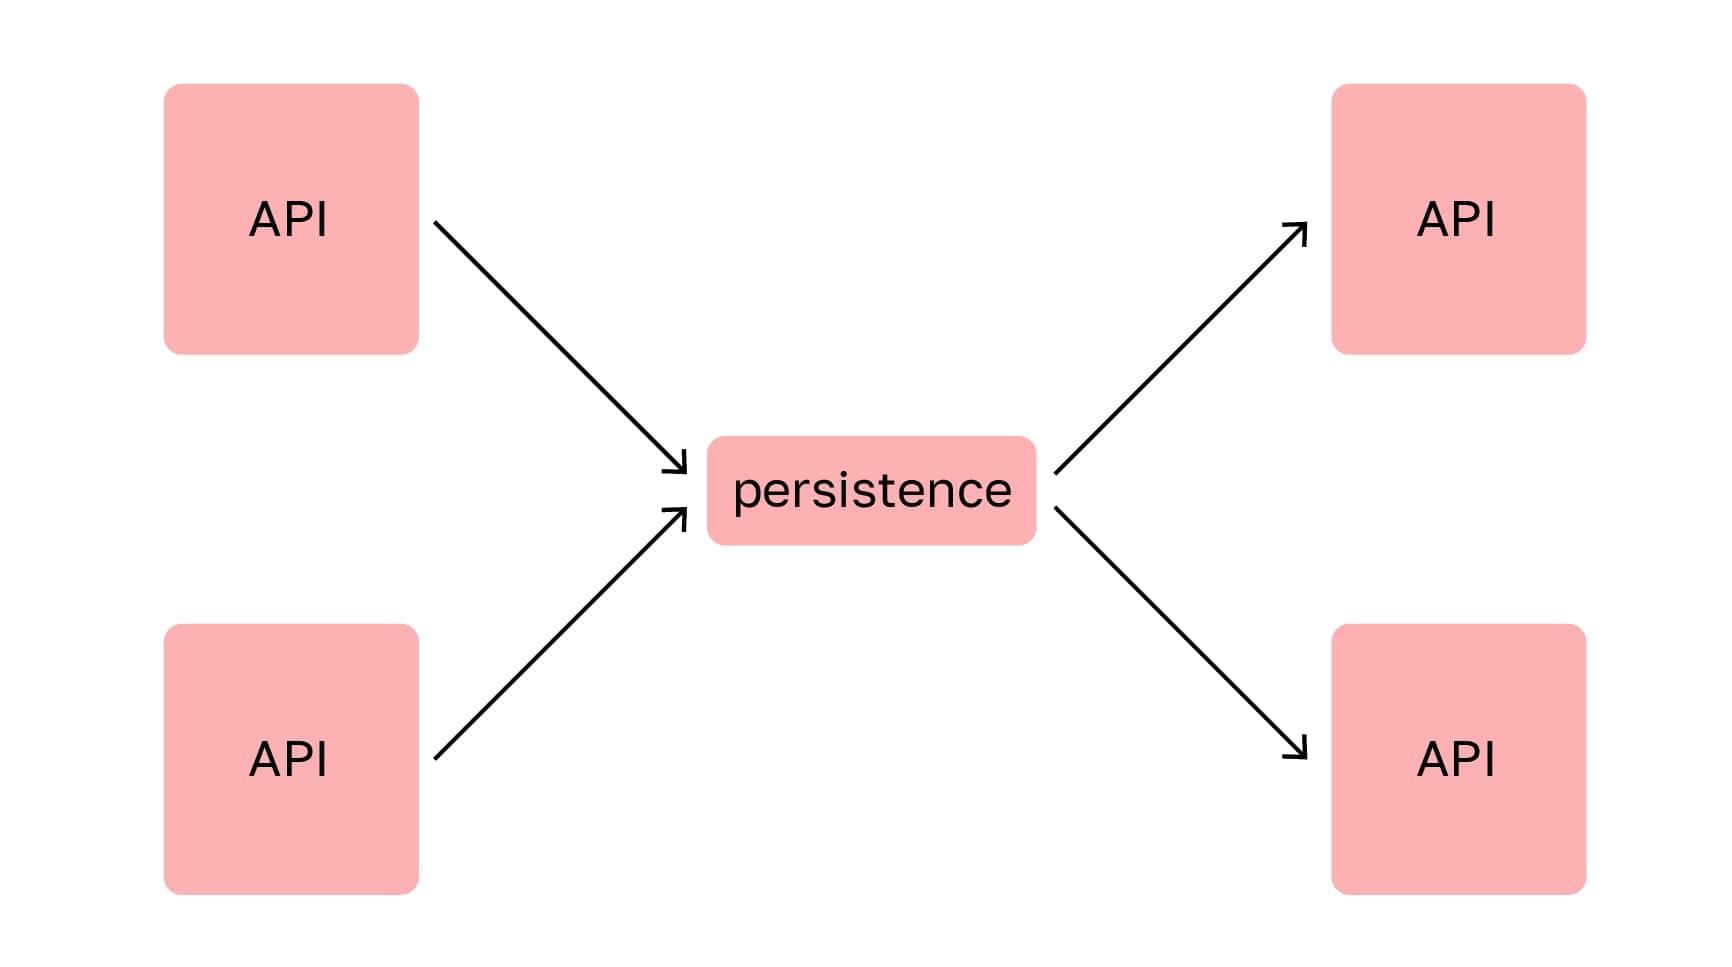 Базовые составляющие брокера: API для продюсера и консьюмера, слой хранения (persistence layer)